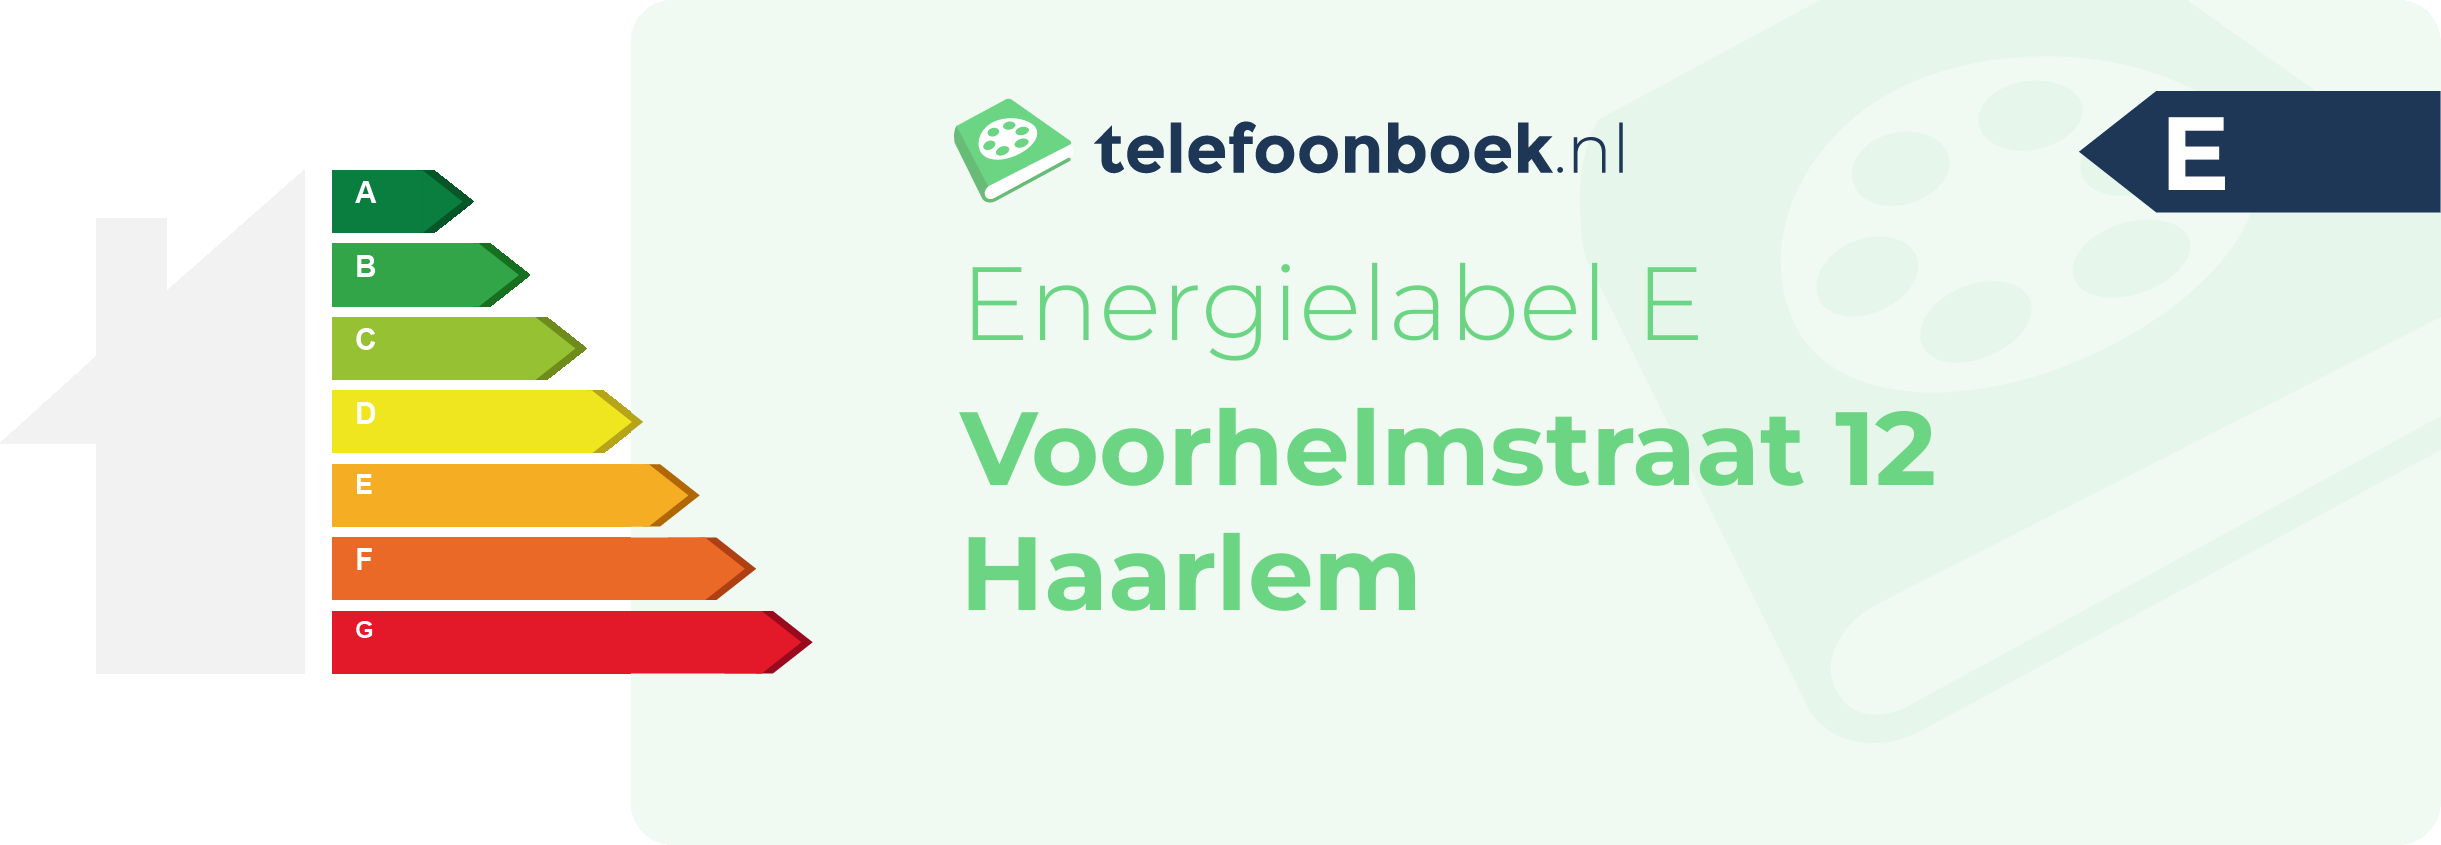 Energielabel Voorhelmstraat 12 Haarlem